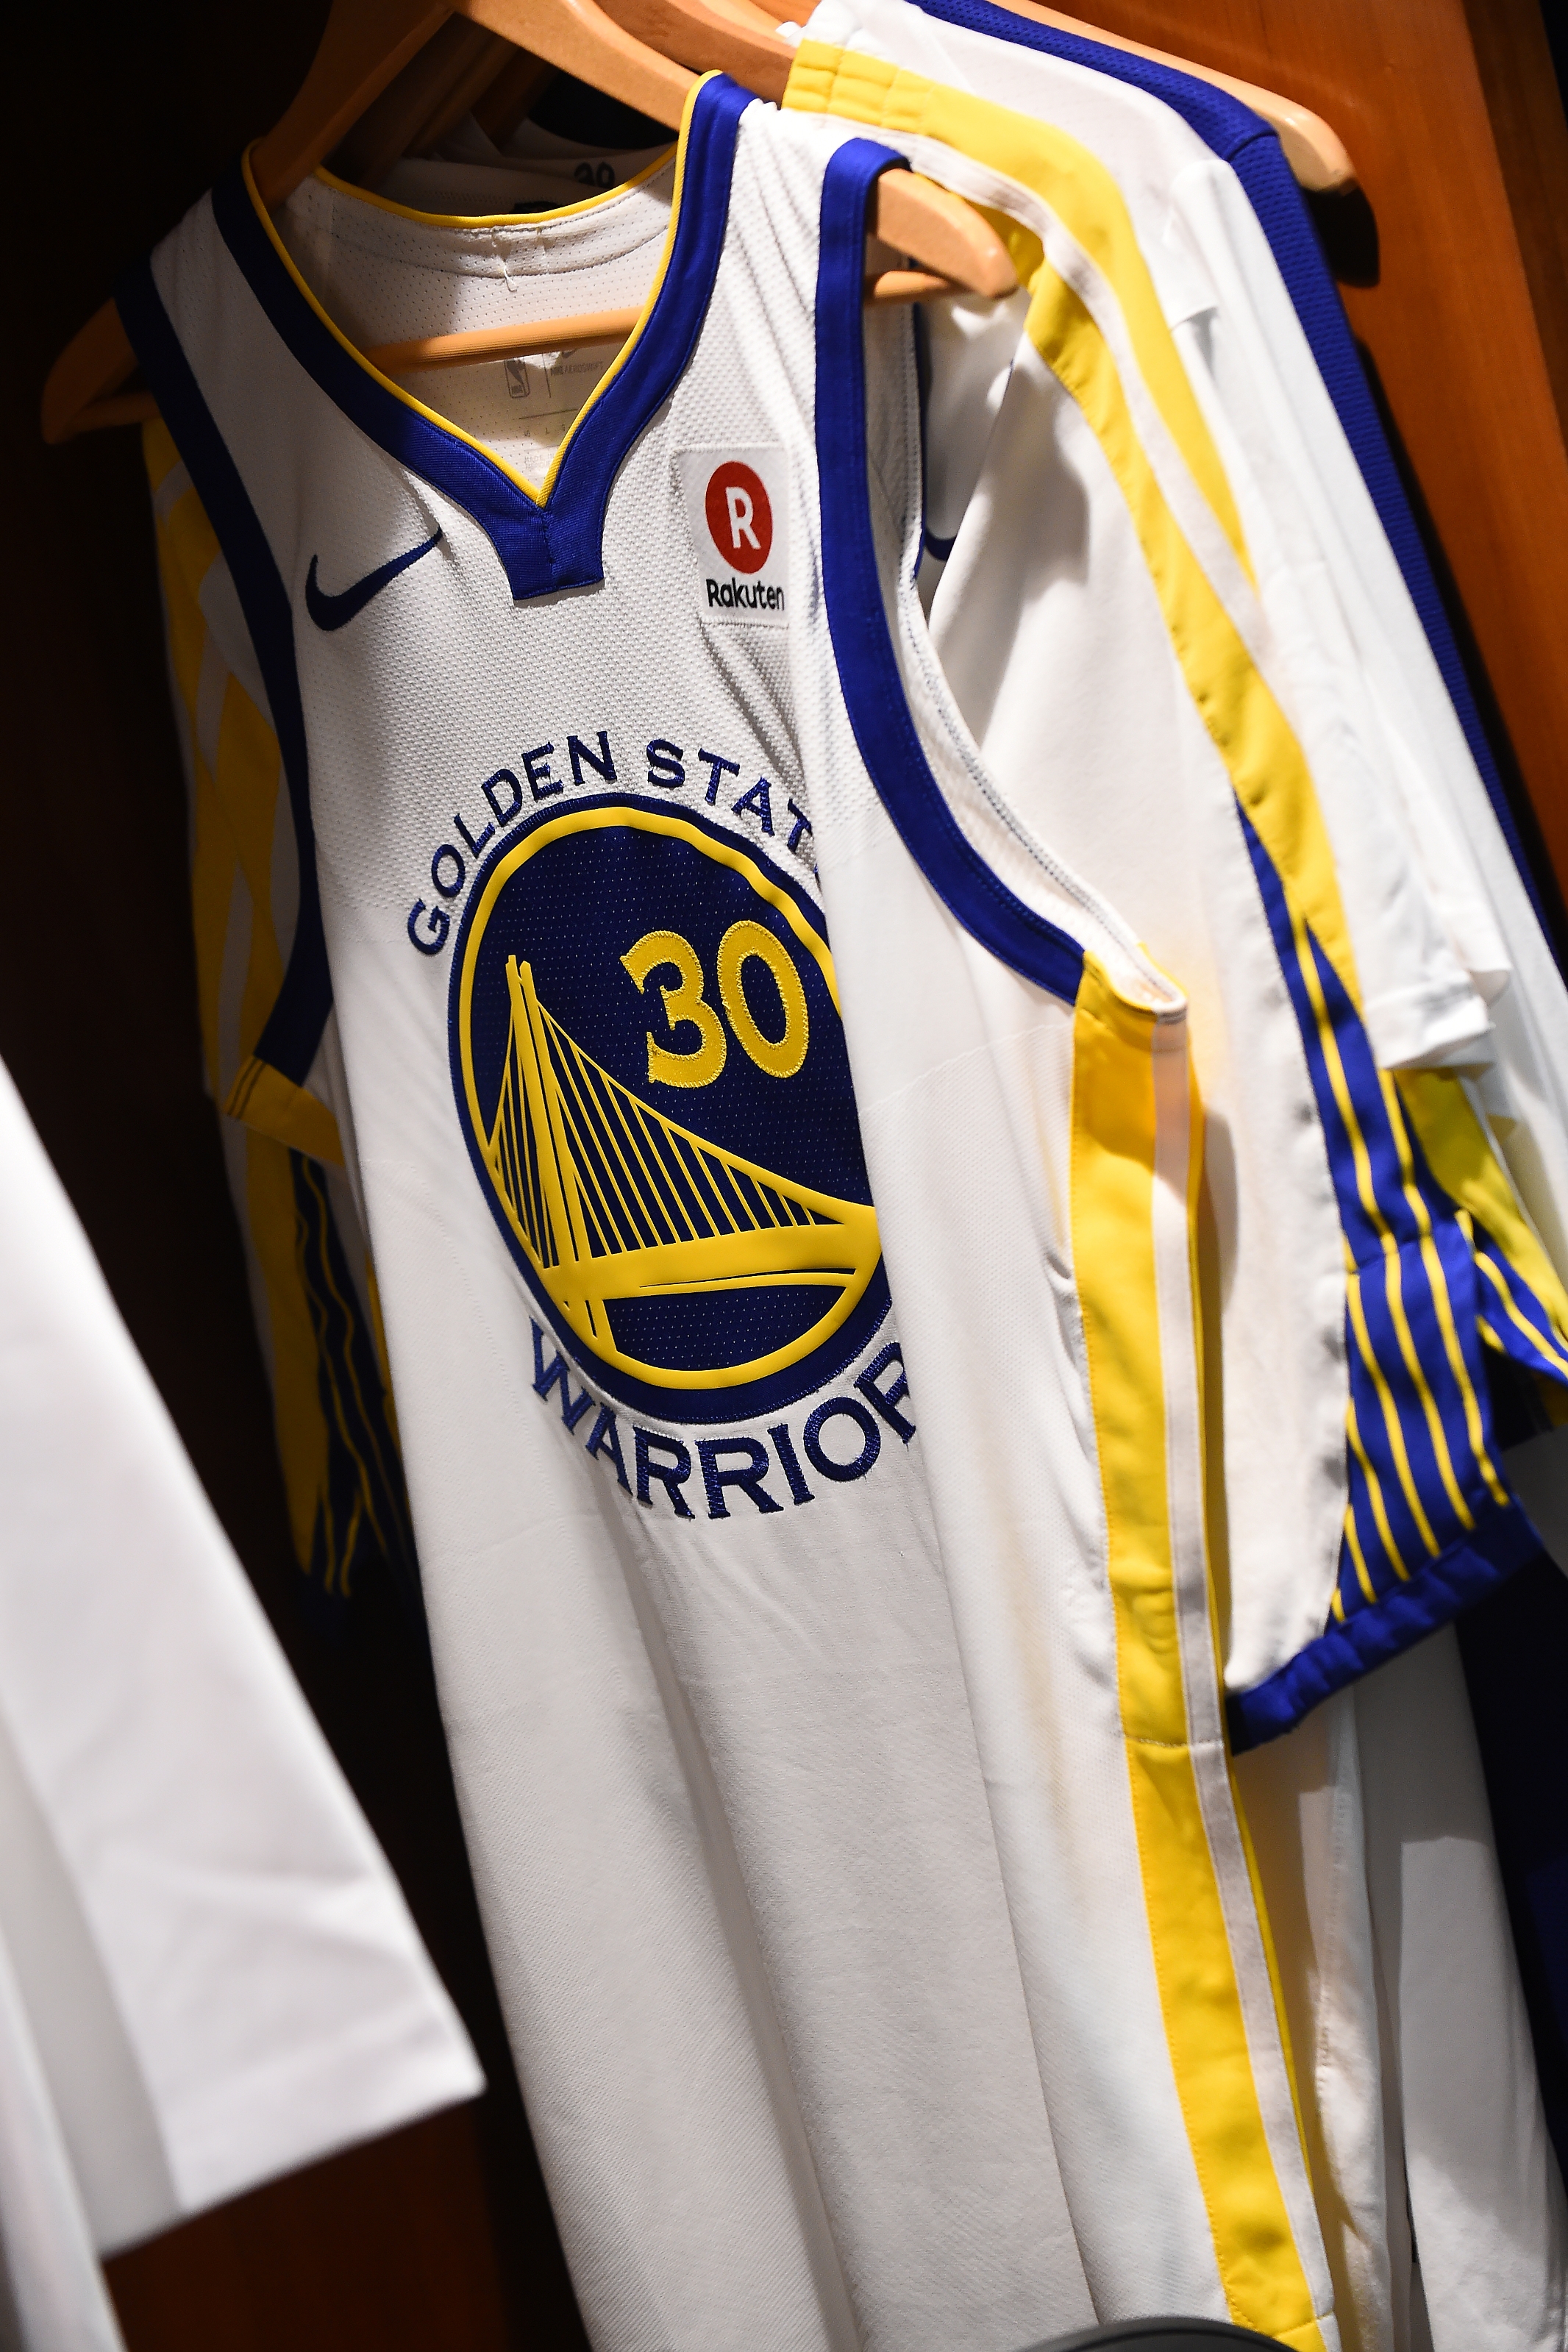 Stephen Curry e Warriors seguem na liderança de vendas de camisas e produtos licenciados NBA